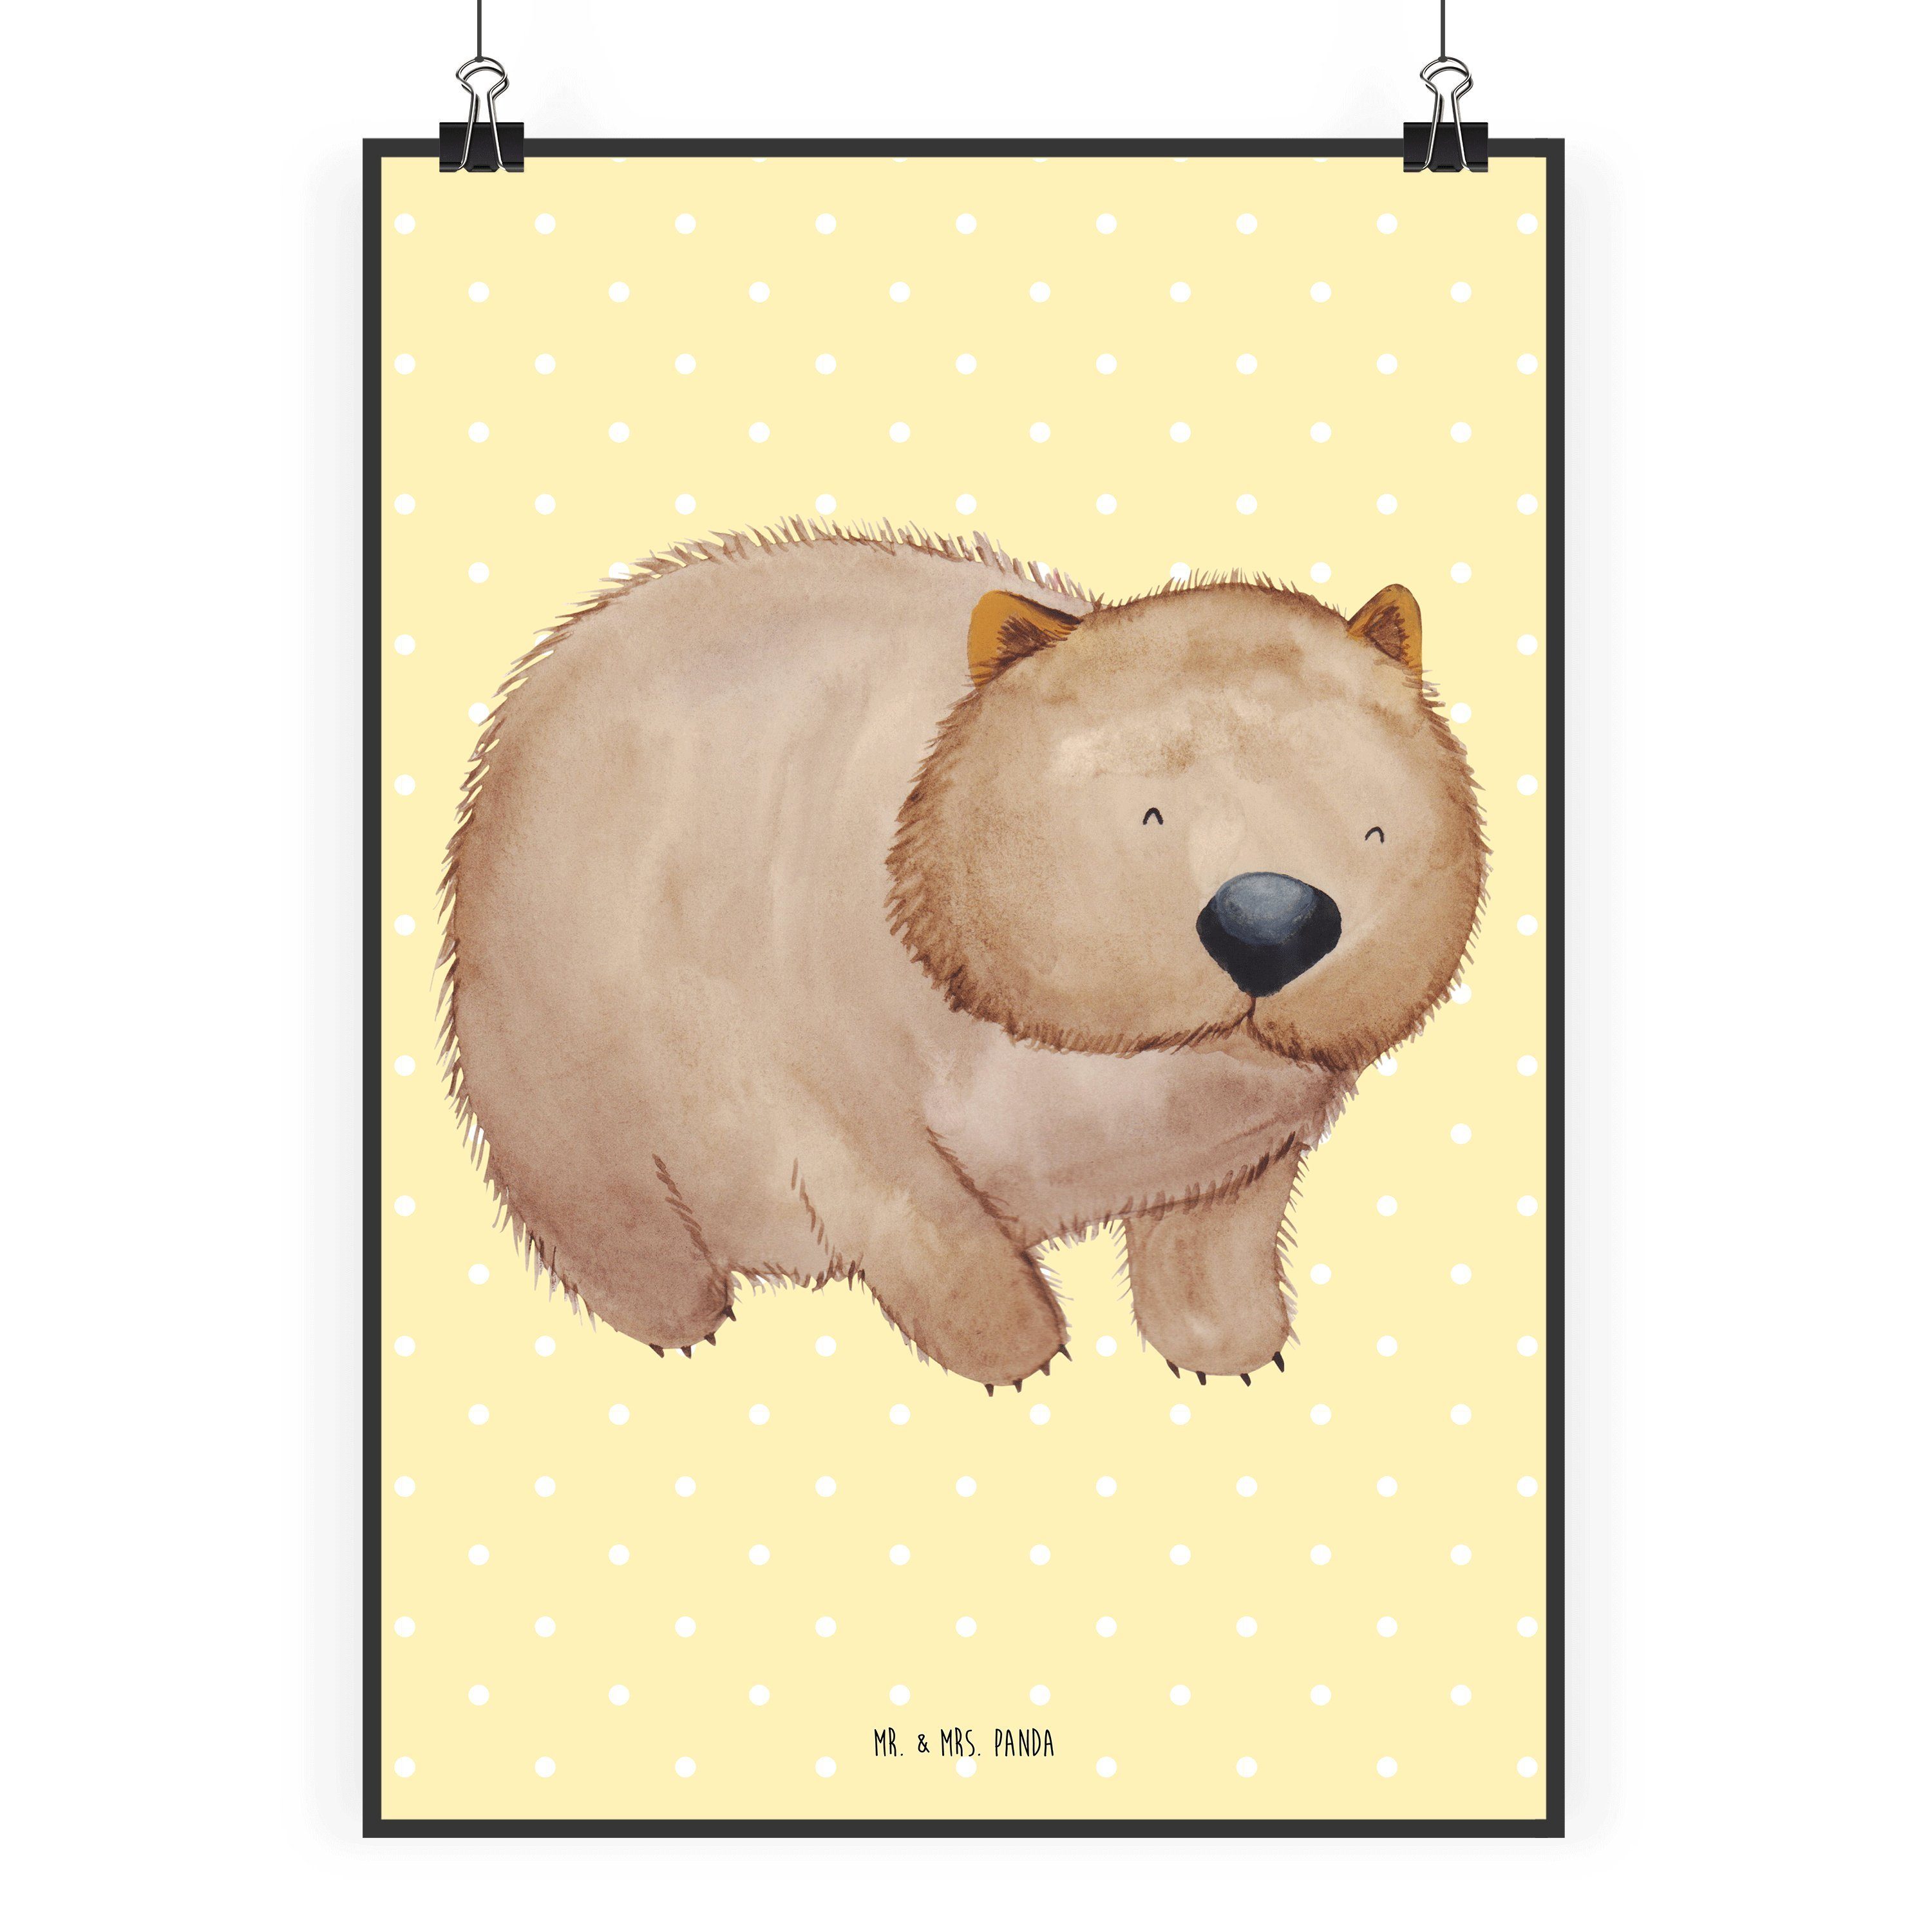 Mr. & Mrs. Panda Poster DIN A2 Wombat - Gelb Pastell - Geschenk, Das Leben ist schön, Wanddek, Wombat (1 St), Ausdrucksstark